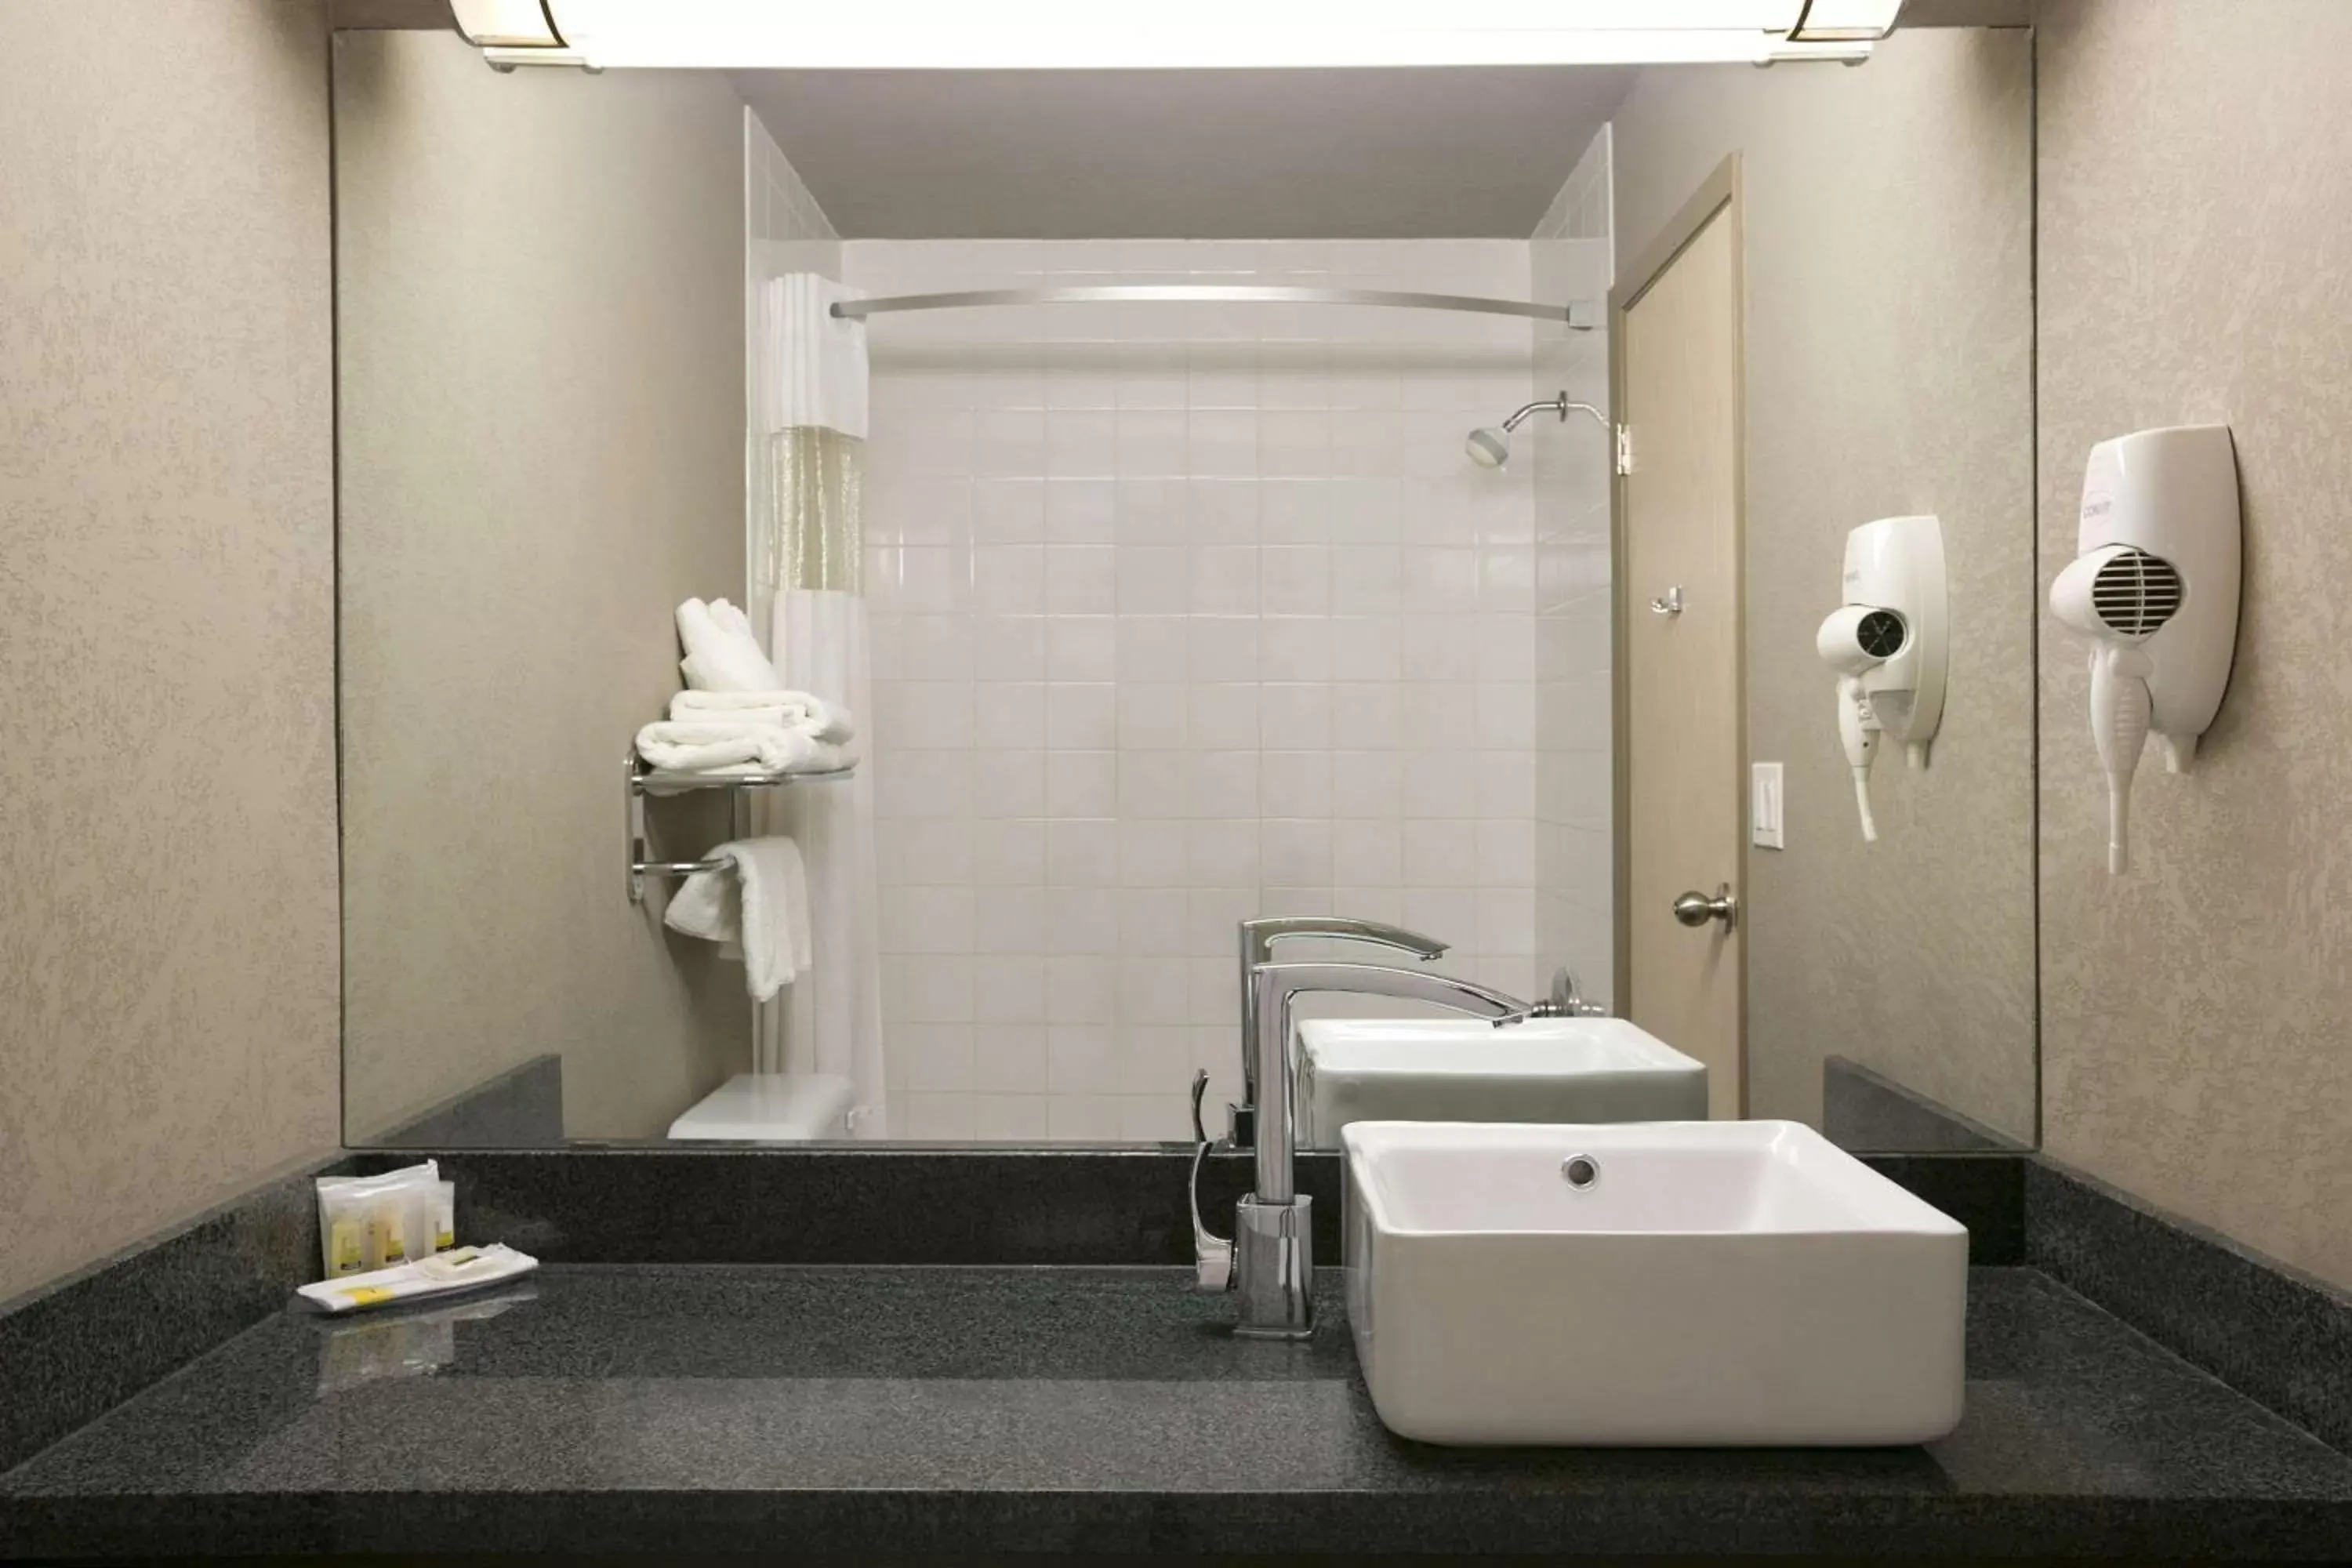 Photo of the whole room, Bathroom in Days Inn by Wyndham Regina